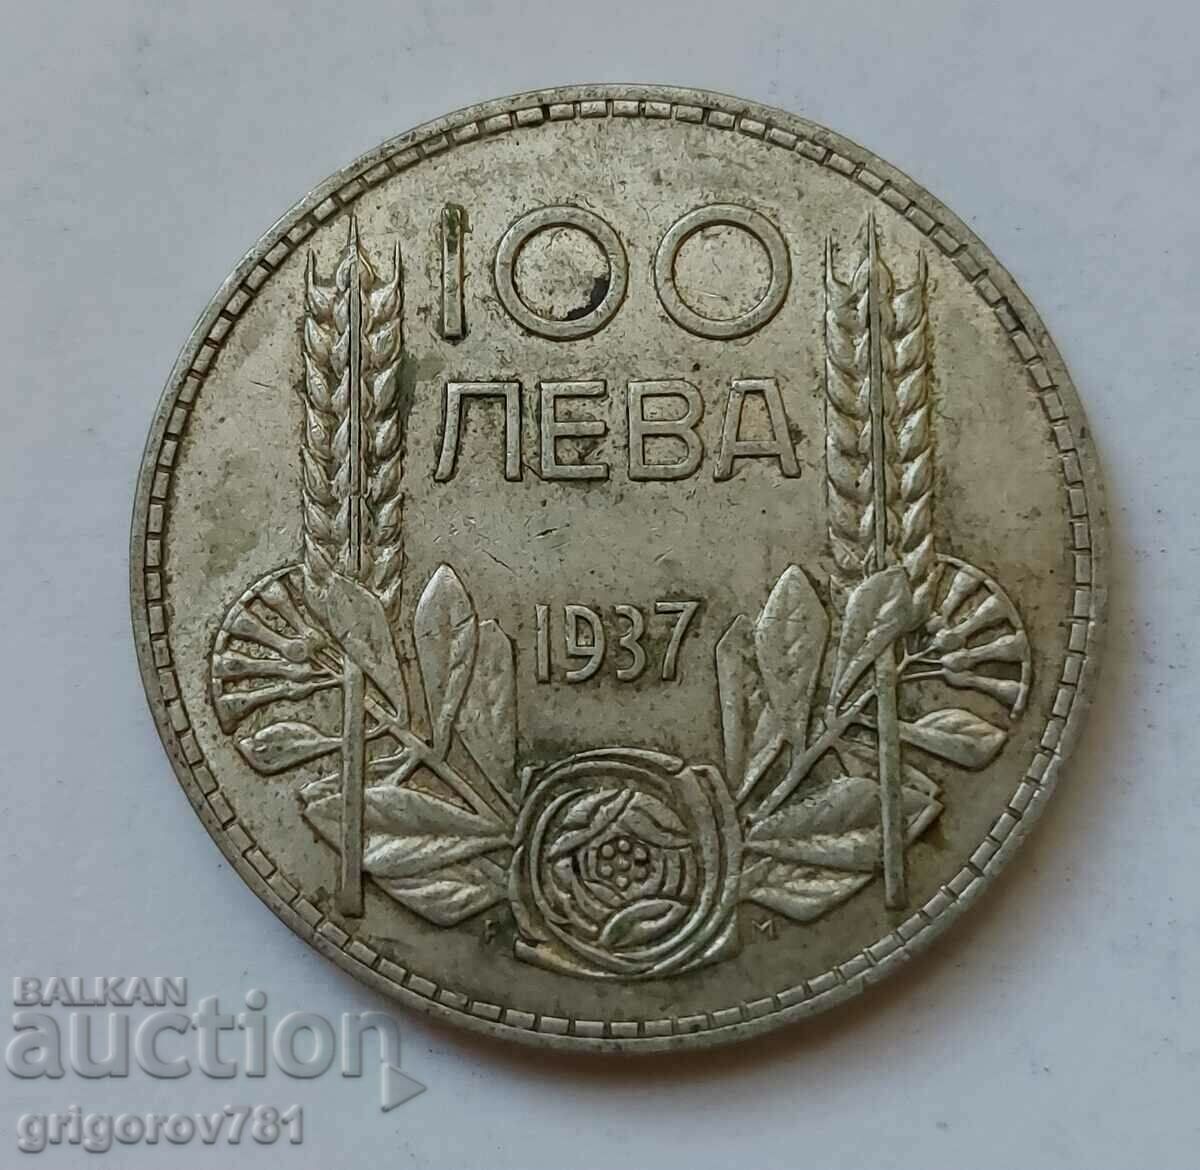 Ασήμι 100 λέβα Βουλγαρία 1937 - ασημένιο νόμισμα #91